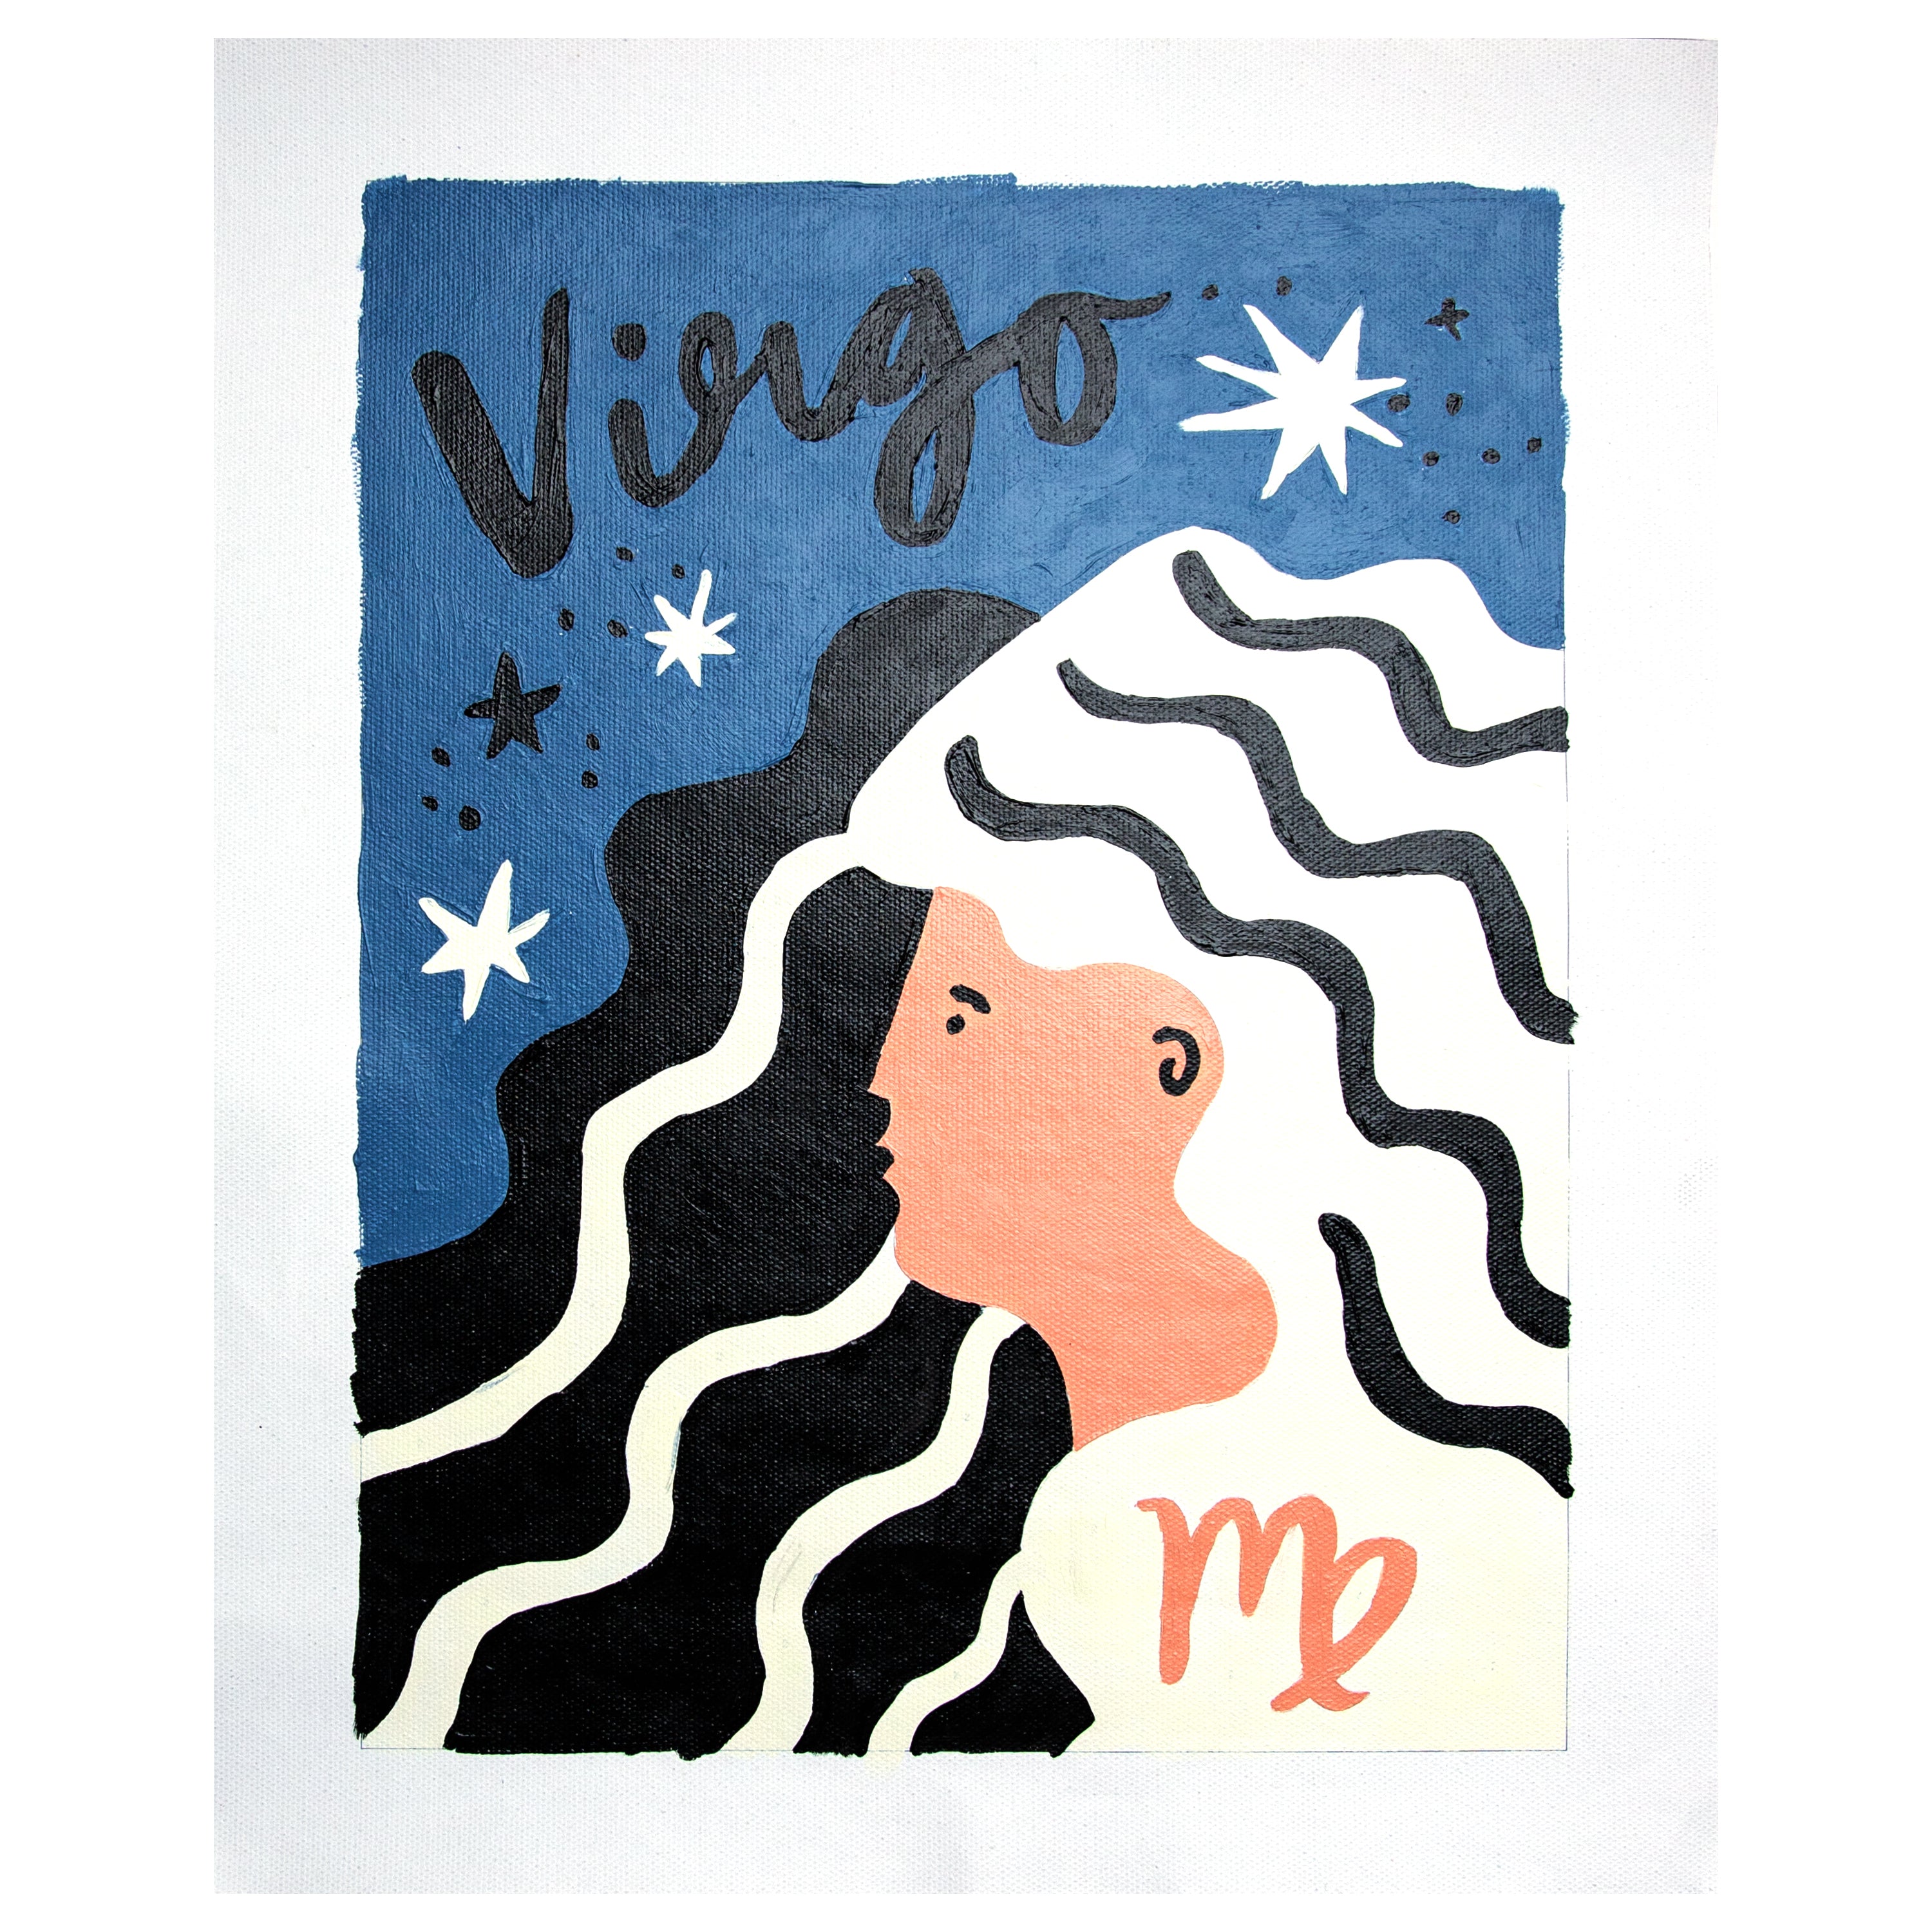 Special Edition Zodiac: Virgo